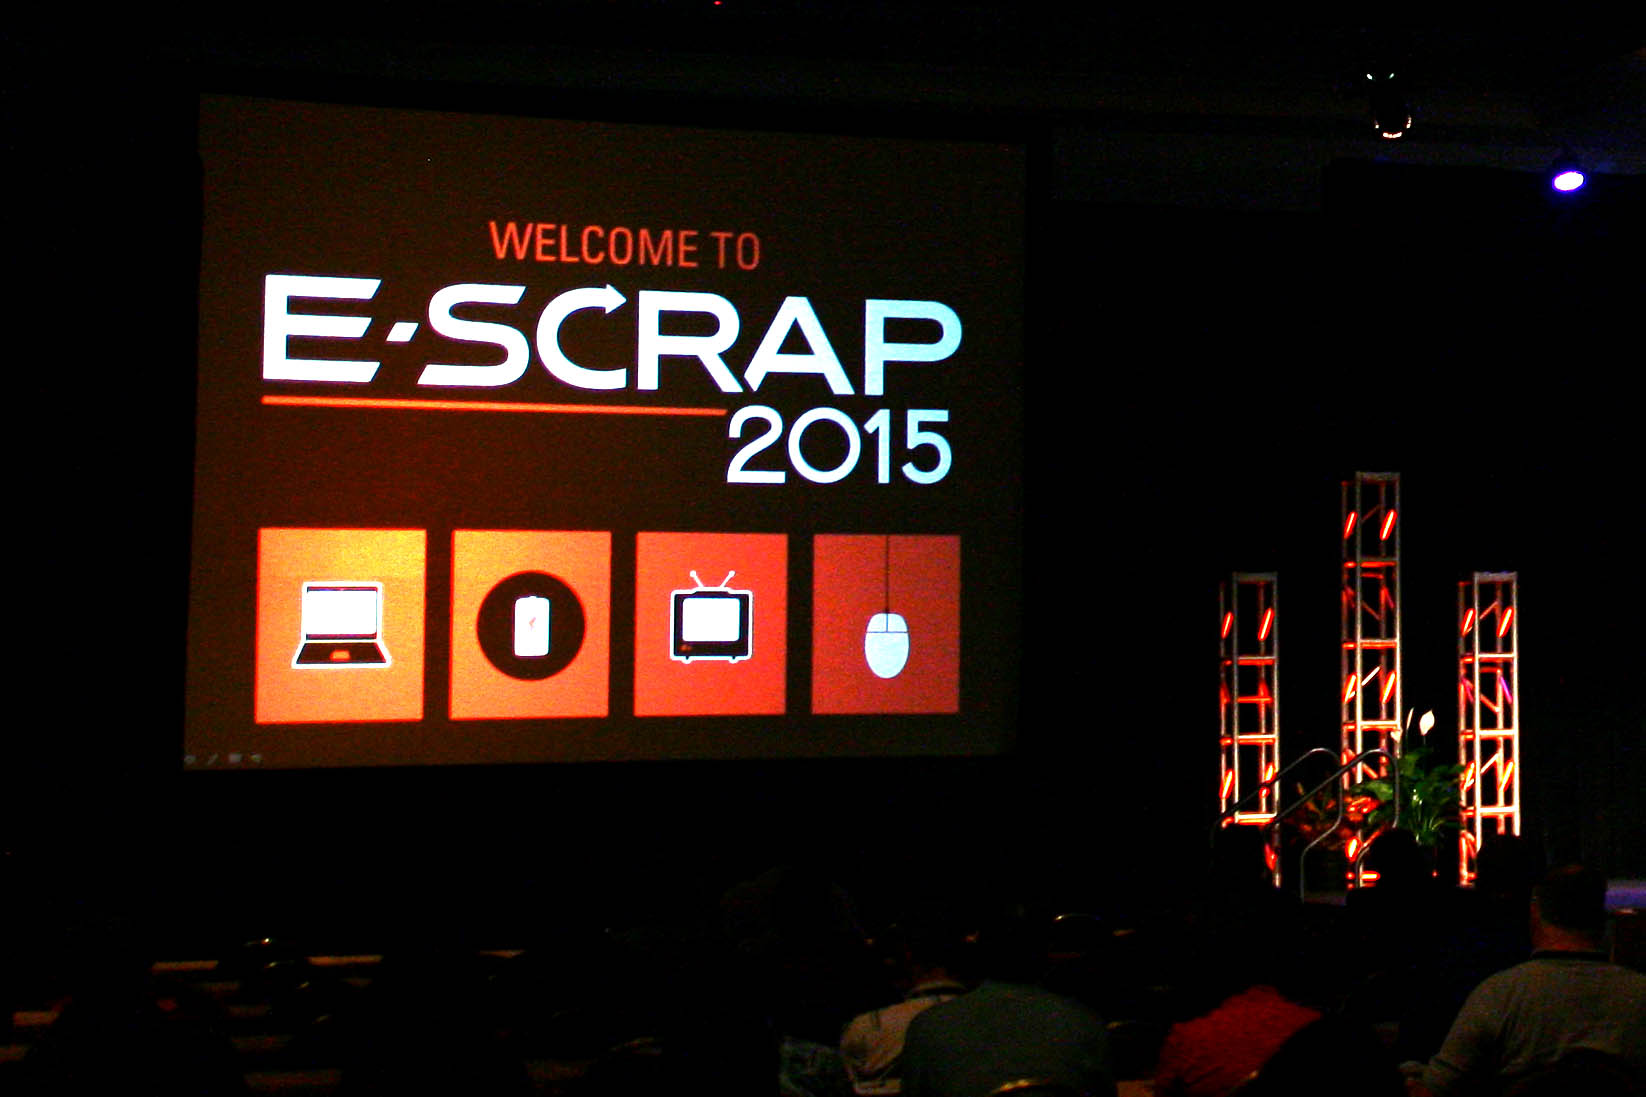 Welcome to E-Scrap 2015